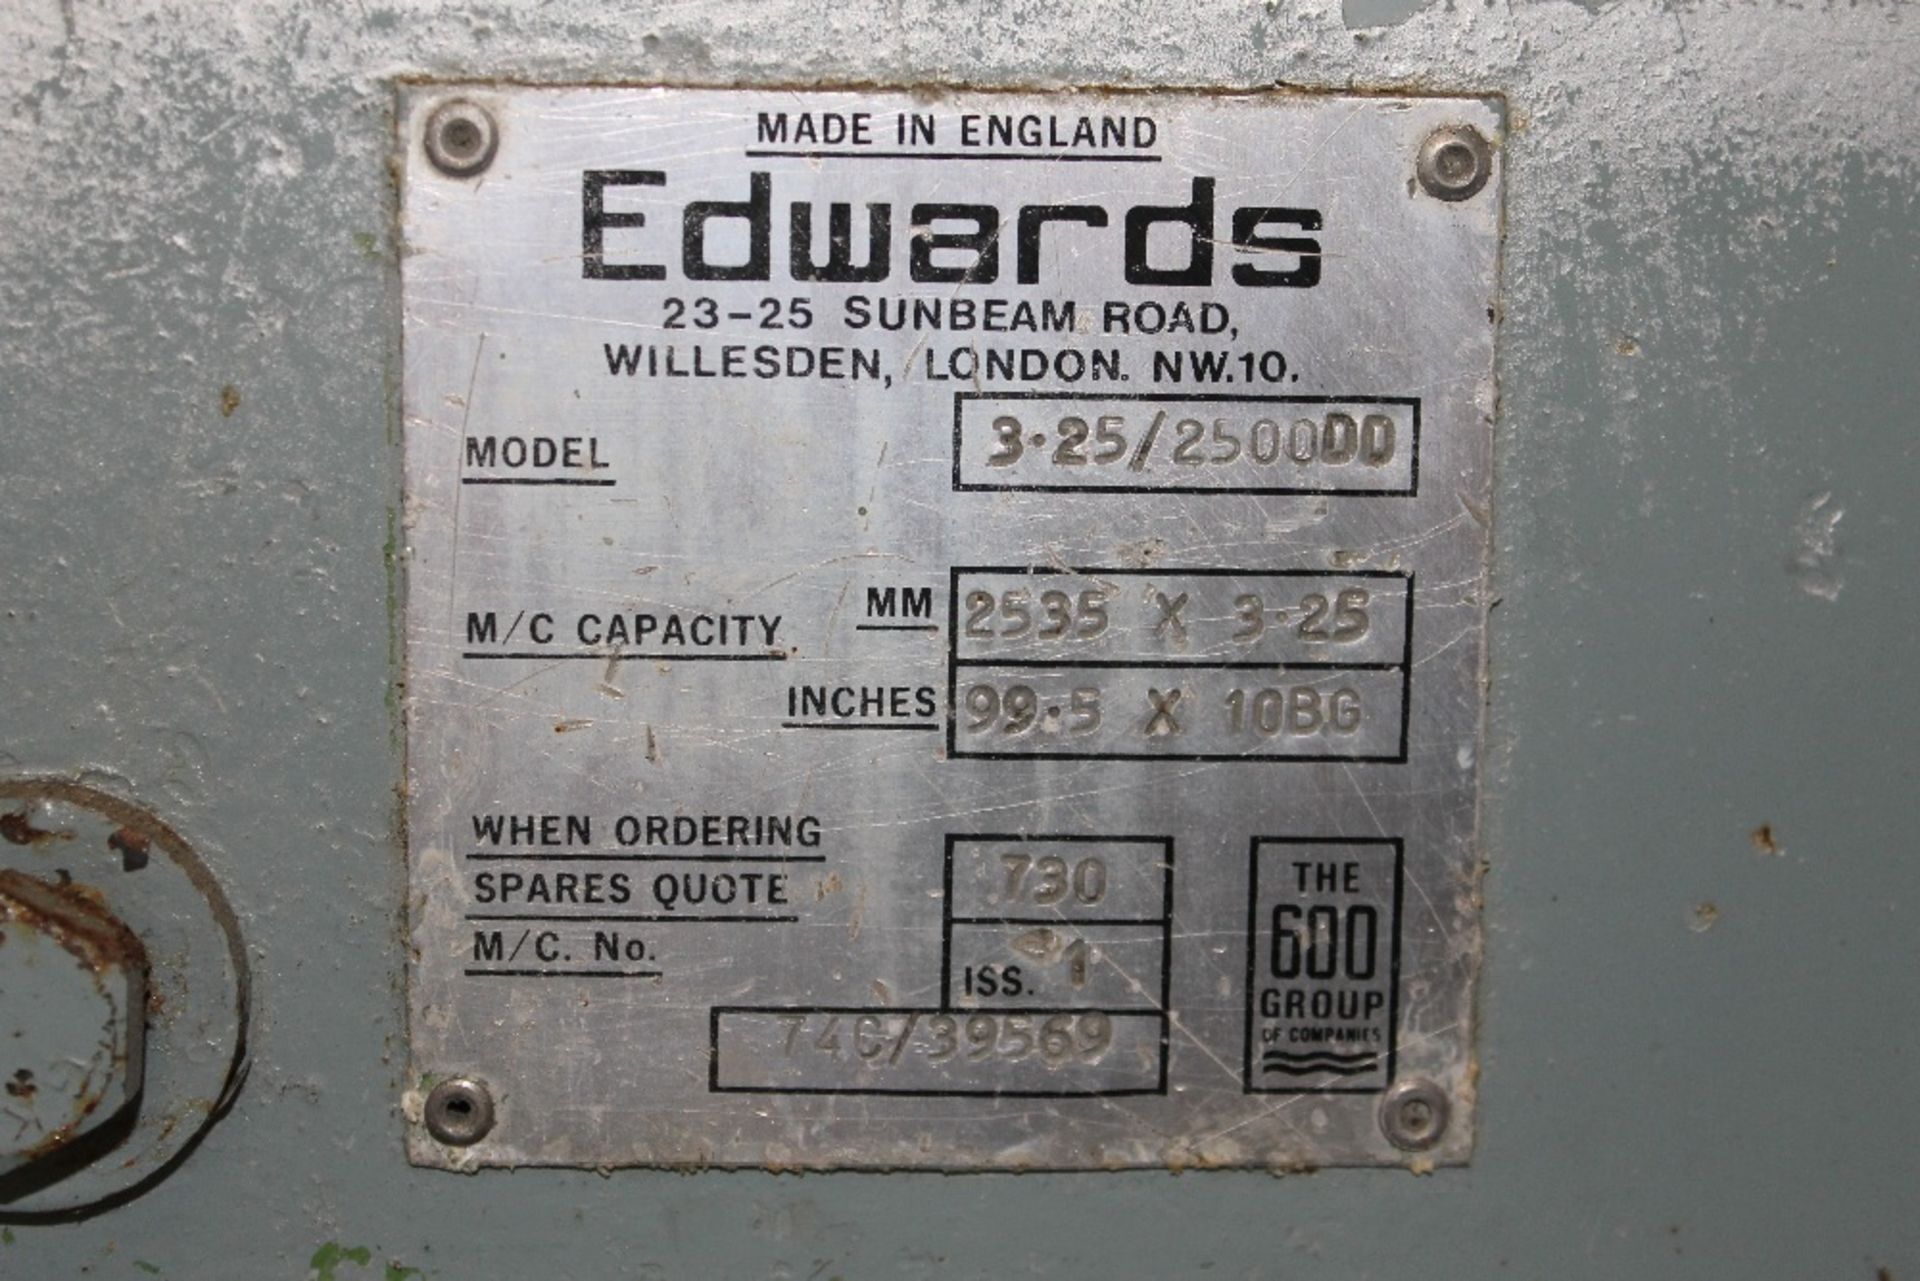 Beoco - Truefield Steel Cutting Machine – FJ Edwards Ltd - Image 3 of 3